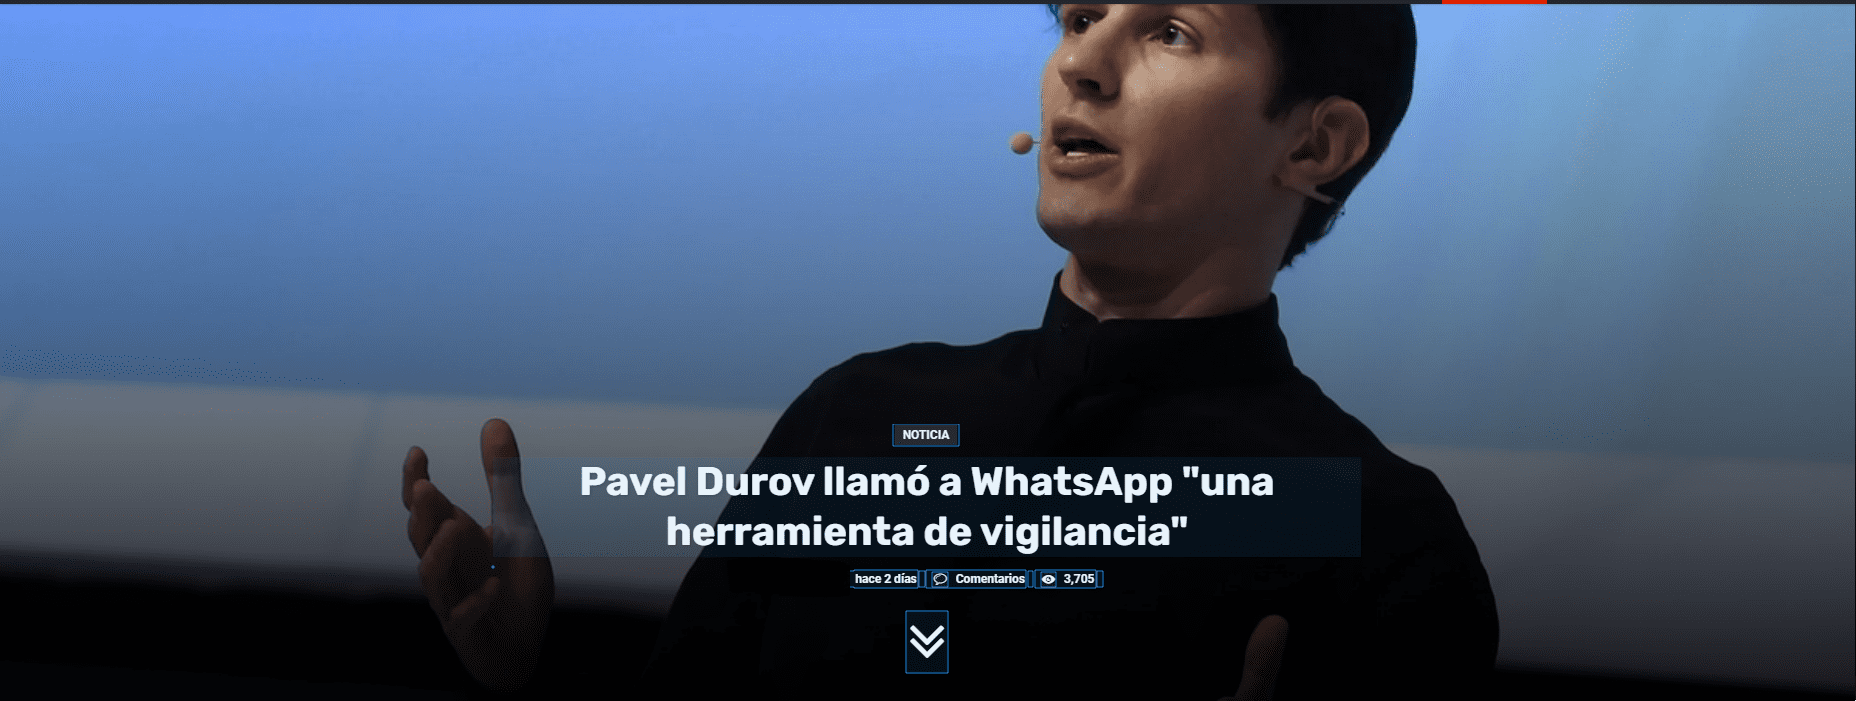 Pavel Durov llamó a WhatsApp "una herramienta de vigilancia"